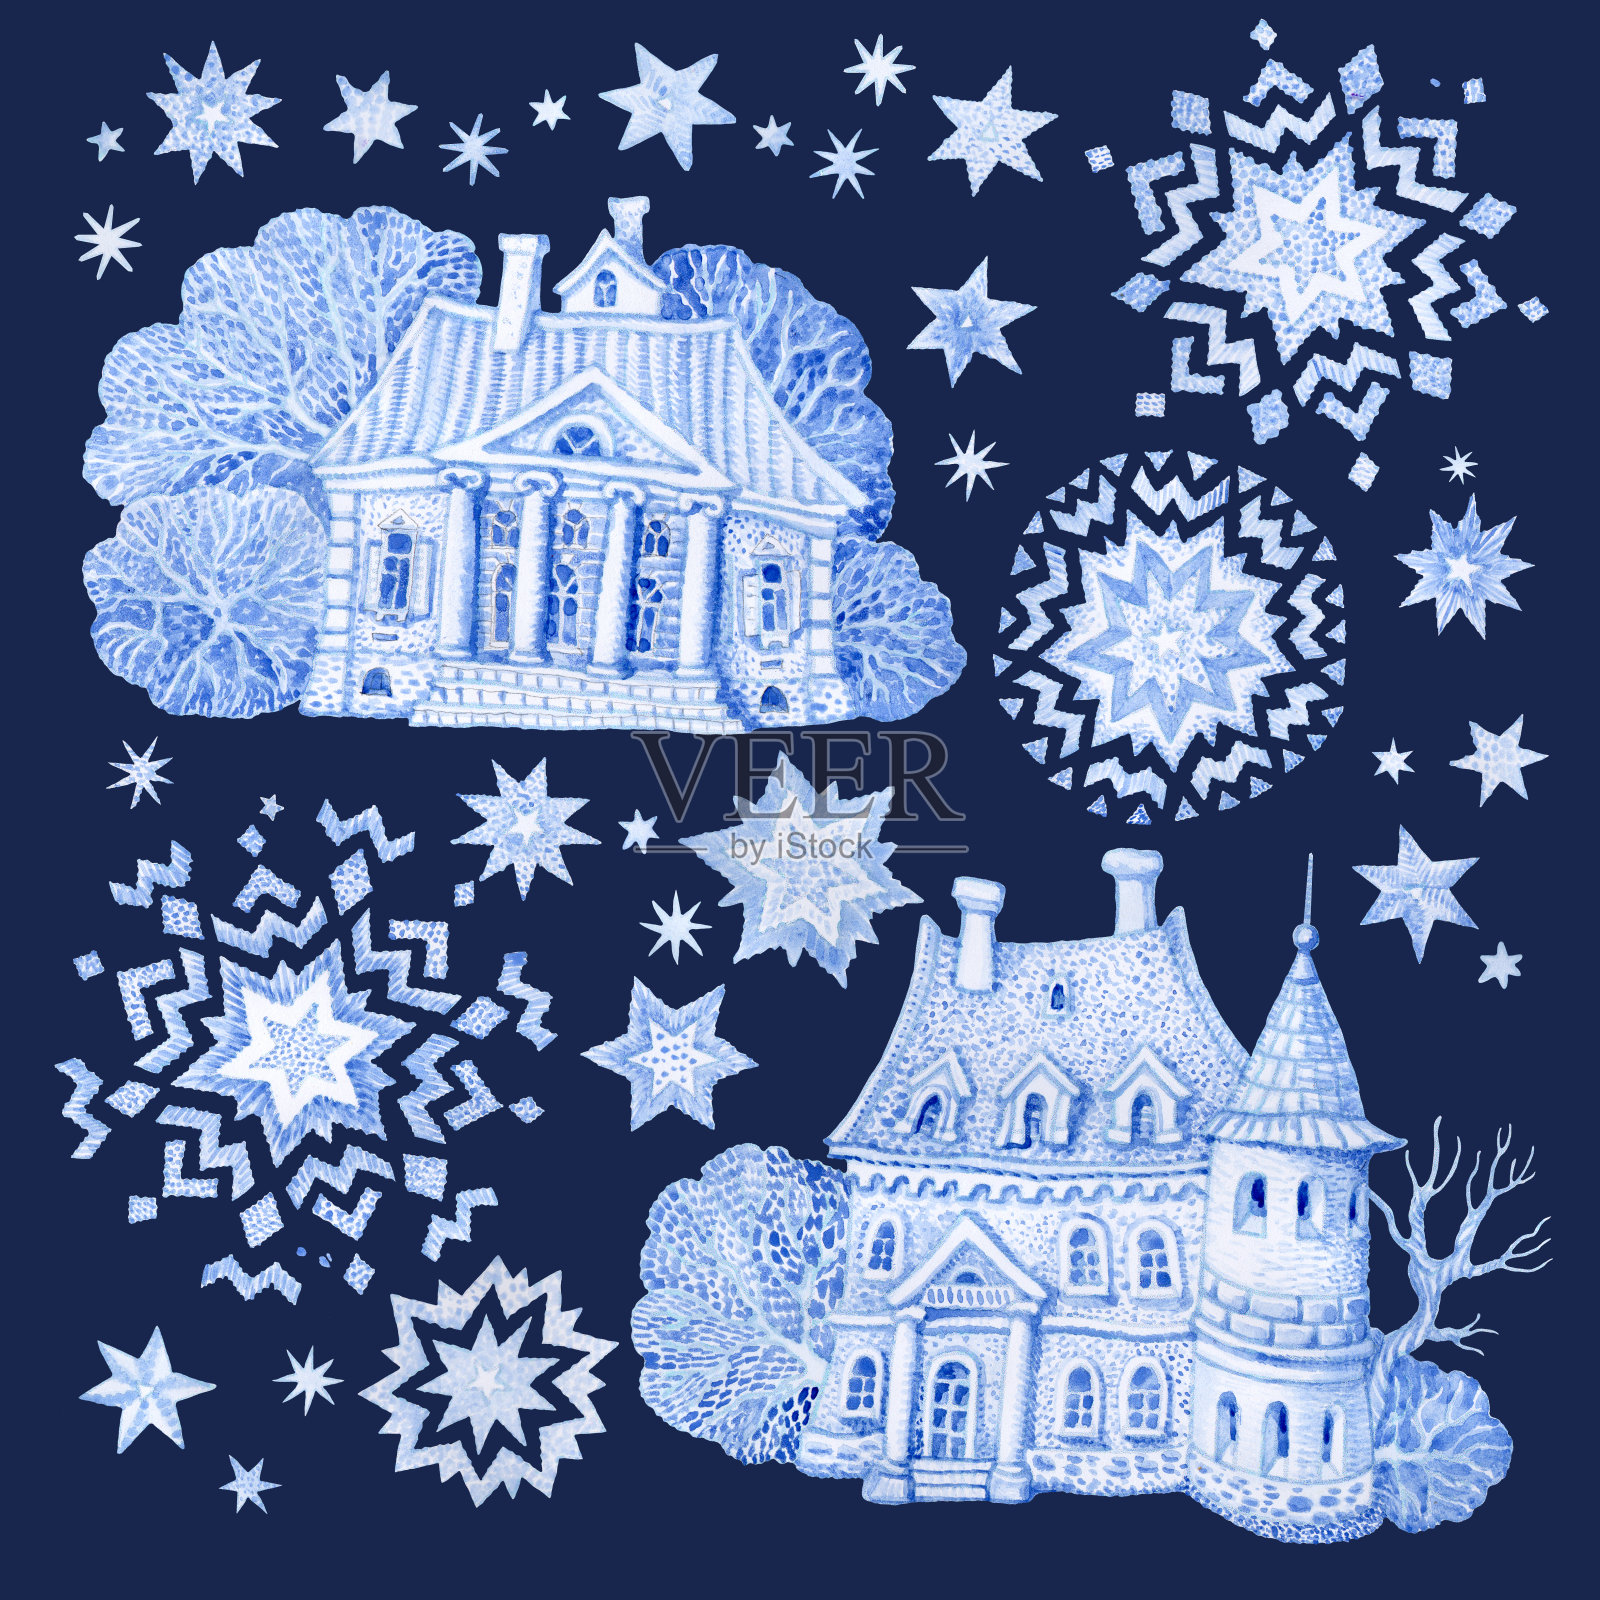 一套幻想的建筑物与圣诞星和雪花。手工绘制的蓝色水彩童话老城房子孤立在黑暗的靛蓝背景。冬季景观t恤印花。、问候卡或请帖插画图片素材